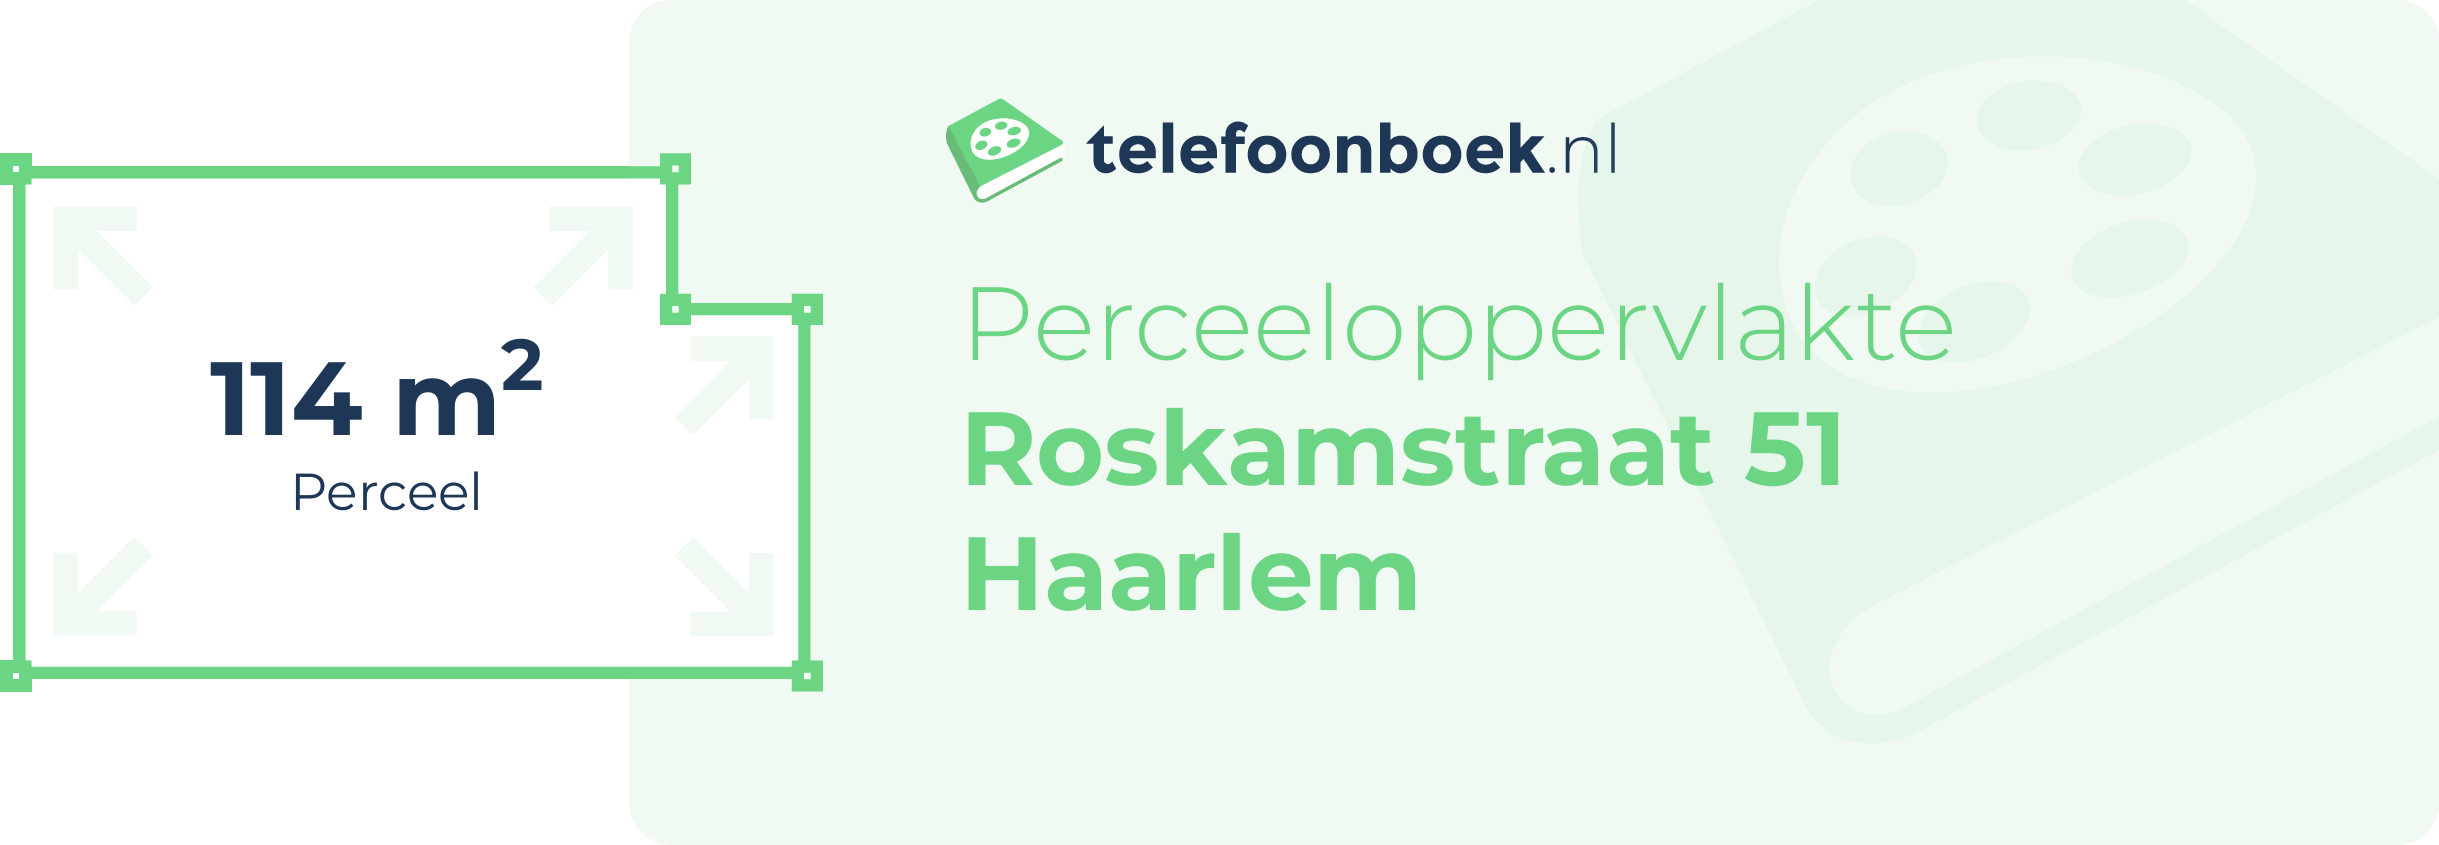 Perceeloppervlakte Roskamstraat 51 Haarlem